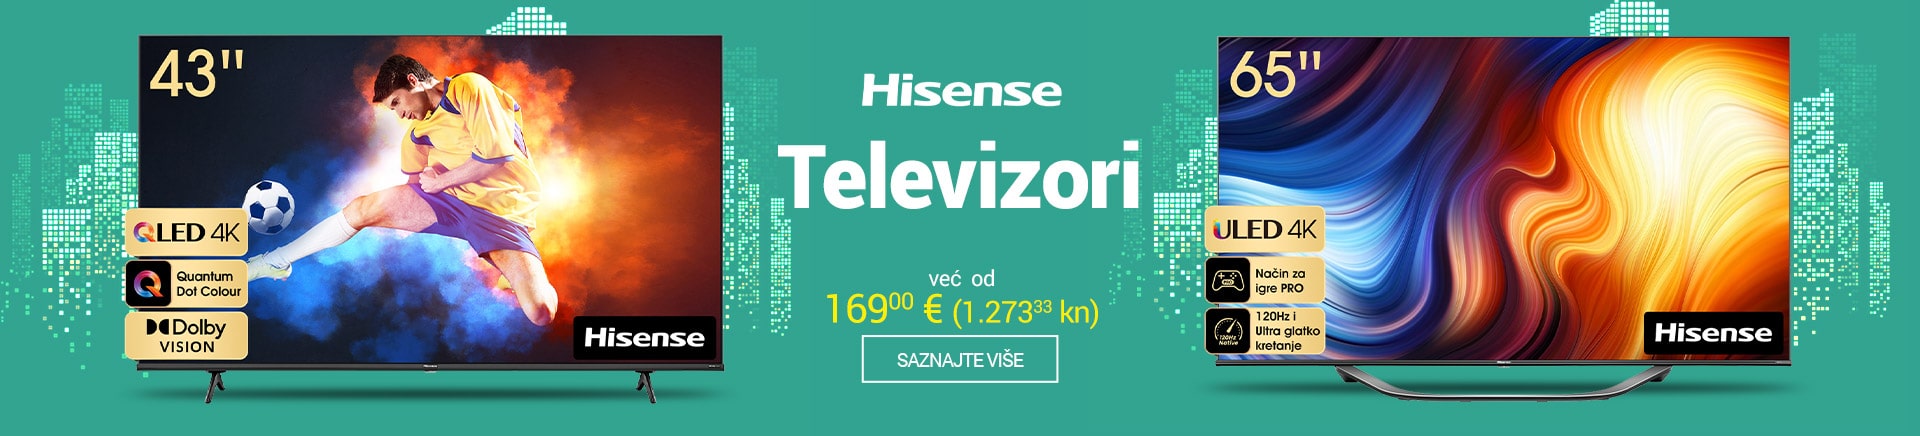 HR Hisense televizori TV MOBILE 380 X 436-min.jpg